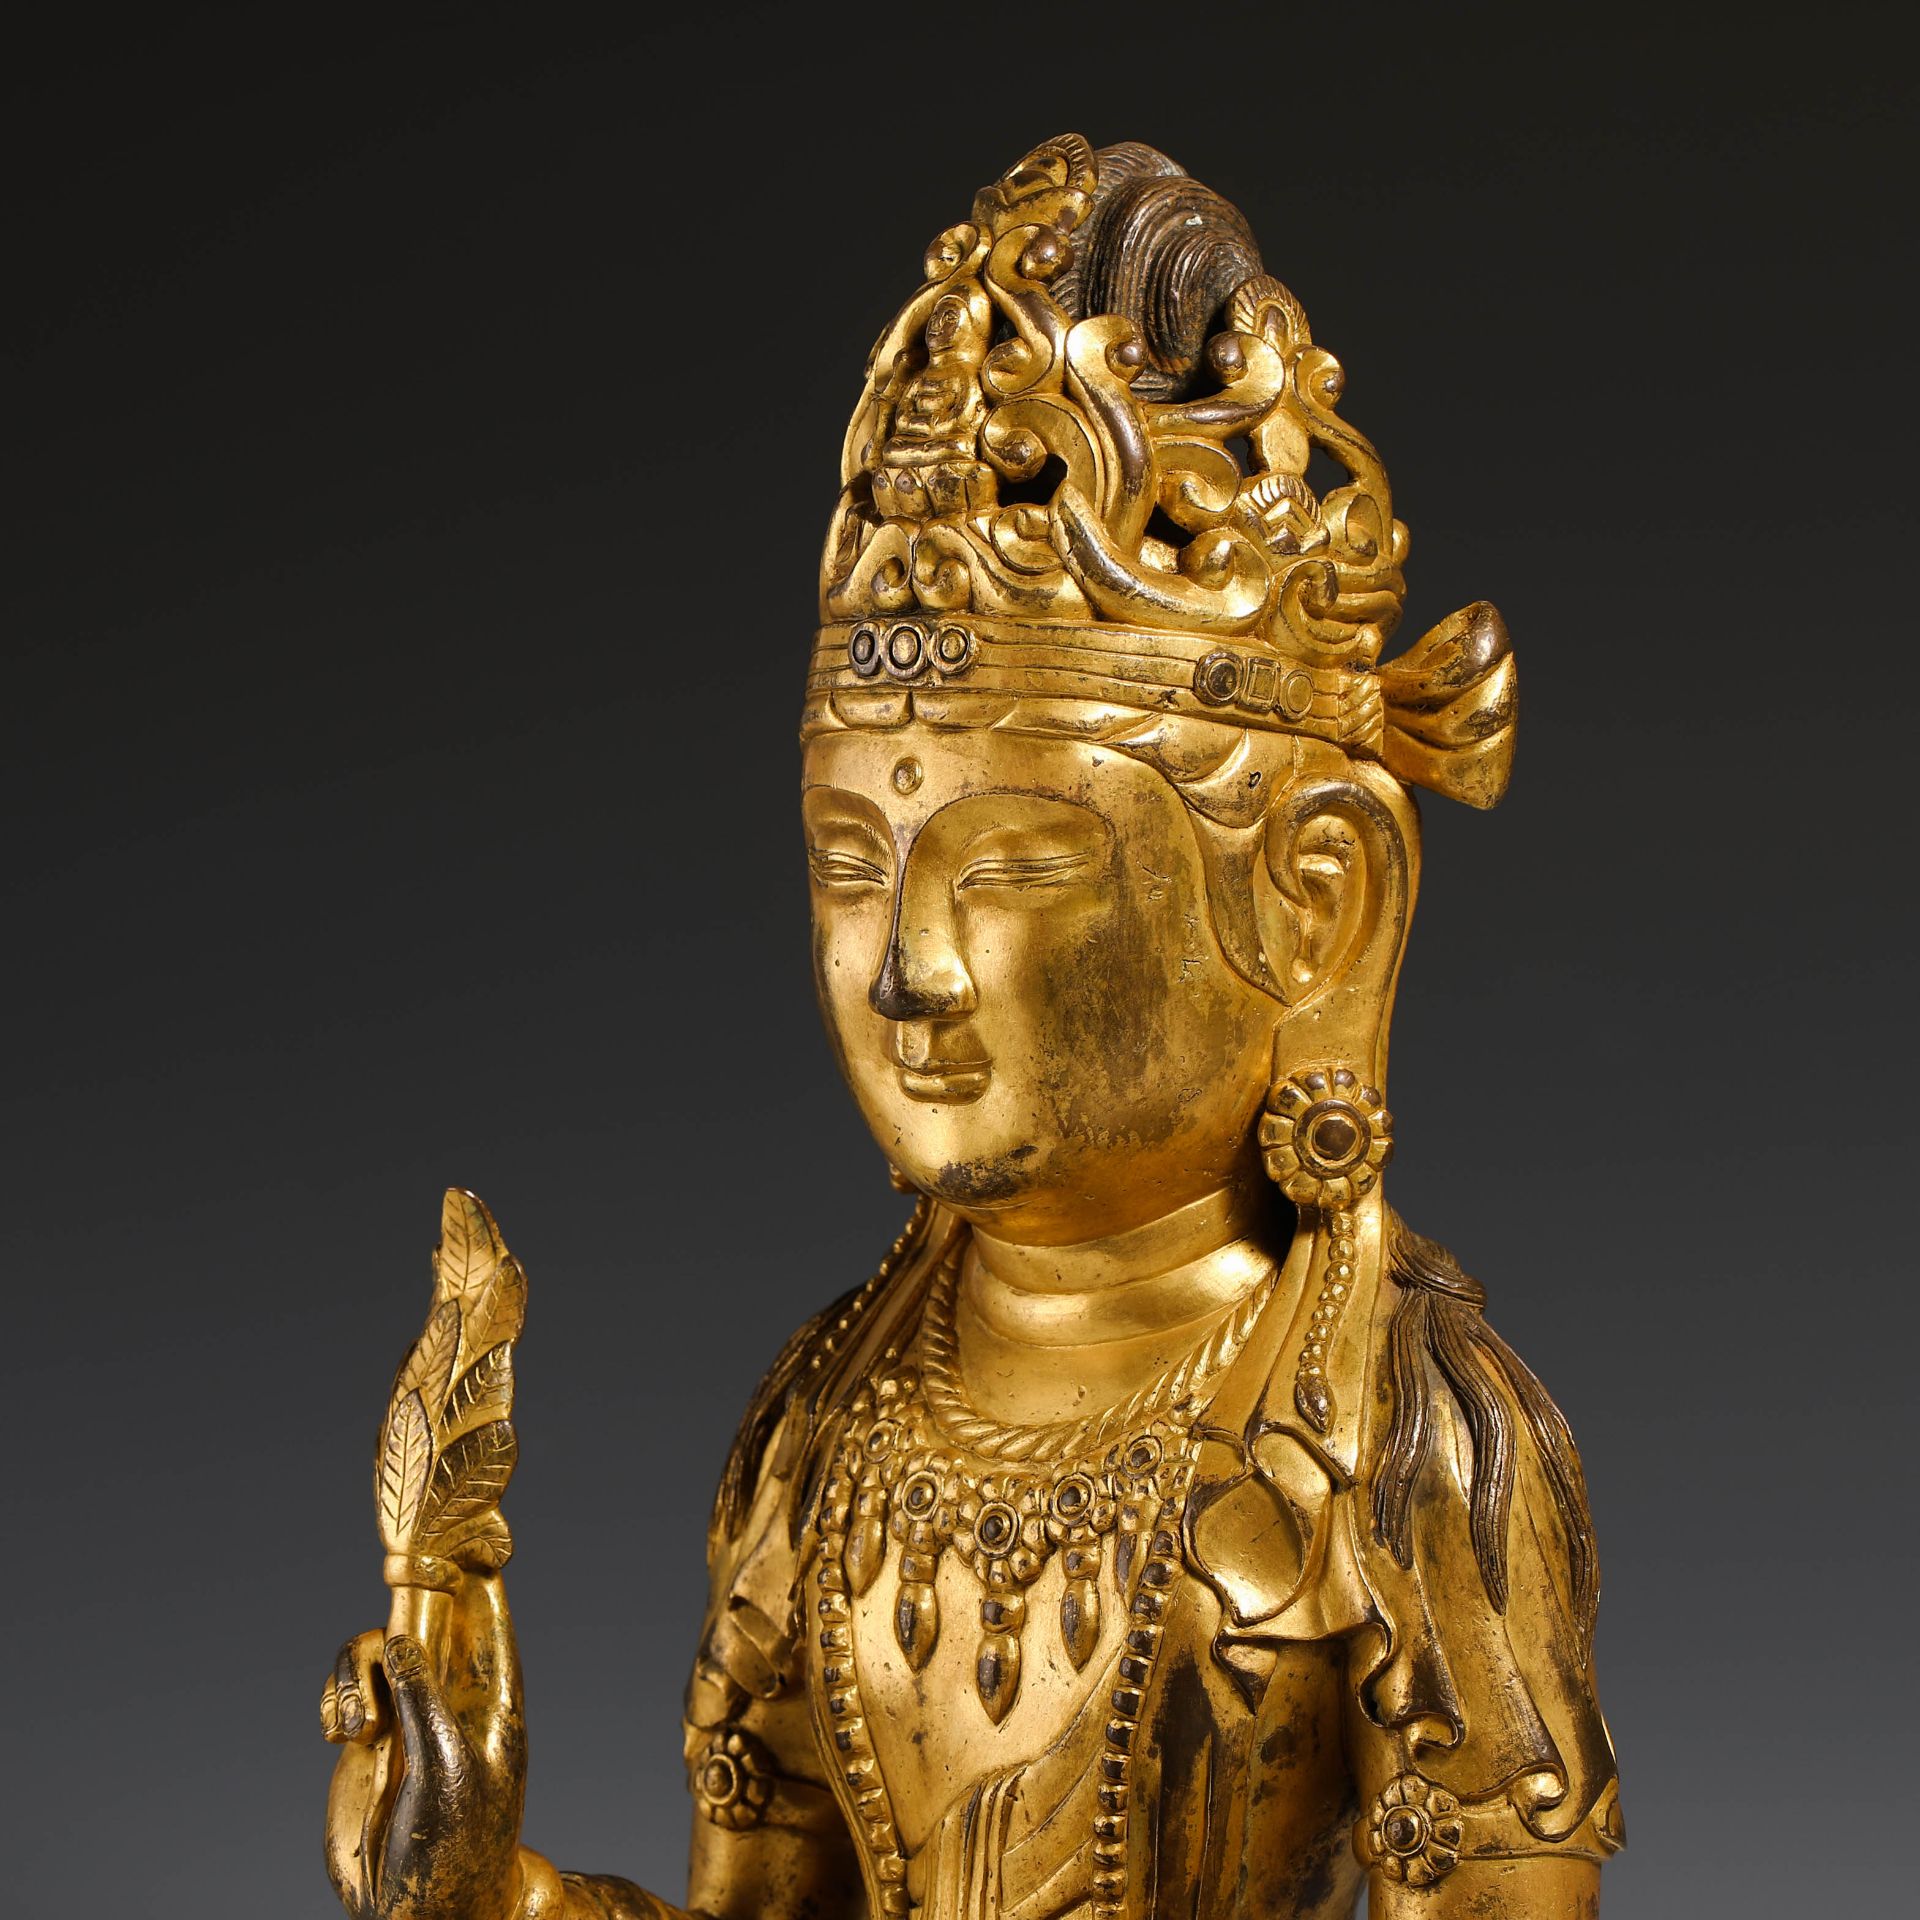 10th Century Guanyin Buddha - Image 13 of 16